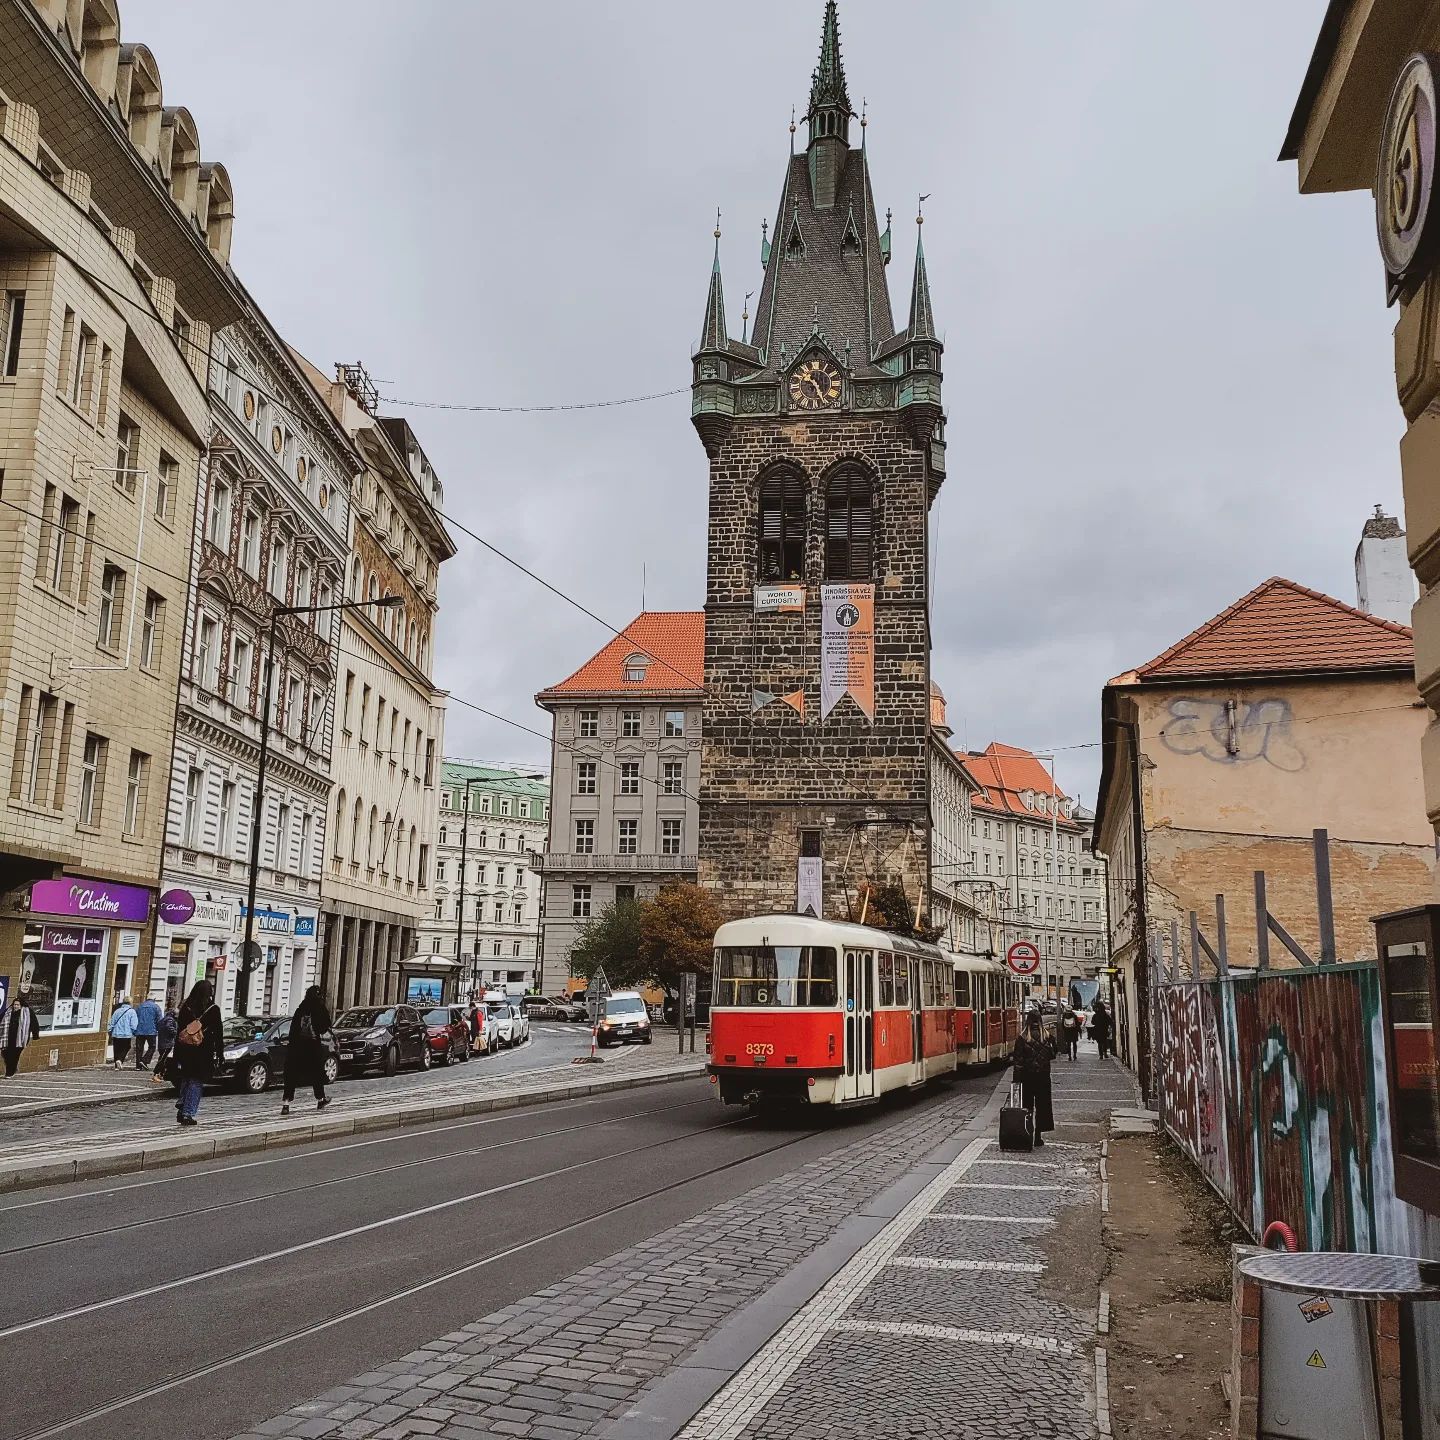 My tip for your visit to Prague: take the tram!

🇳🇱 Tijdens een stedentrip probeer ik minimaal gebruik te maken van het openbaar vervoer. Maar ik moet zeggen in Praag werd mijn aandacht wel getrokken door de mooie rode trams en dan vooral de schattige oude versie. Je zag ze echt overal. Voor ons hotel vertrok iedere paar minuten wel een tram. Dat moesten we dus ook even uitproberen. 

En het OV systeem in Praag sprong er voor mij echt uit. Reizen met de tram is supersimpel: 
✅ Installeer de 'PID mobile' app 
✅ Koop je kaartje(s)
✅ Activeer kort voor vertrek je ticket
✅ En gaan!

Wij kochten een ticket voor 24 uur (120 Kroon / 4,75 Euro) en konden de hele stad door met de tram en metro. Je hoeft nooit lang te wachten. Ze rijden achter elkaar door. Ook in de avond. 

➡️ Meer Praag tips vind je op Backpackfever.nl (linkinbio)

🇬🇧 I'm usually not a person who uses public transport during a city trip as I prefer walking or biking. However in Prague my attention was certainly drawn to the cute red trams and then especially the old version. You really saw them everywhere! 

In front of our hotel a tram was leaving every couple of minutes. So we gave it a try...

And wow, how super easy it is to travel by tram in Prague:
✅ Install the 'PID mobile' app 
✅ Buy your ticket(s)
✅ Activate your ticket just before your trip
✅ And go! 

We bought a ticket for 24 hours (120 Crown, 4,75 Euro) and could travel throughout the entire city using either tram or metro. You never have to wait for longer than a couple of minutes. Even in the evening!

➡️ For more Prague tips: go to Backpackfever.nl (linkinbio)

#praag #prague #praha #prague🇨🇿 #praguestagram #pragueworld #pragueview #stedentriptip #stedentrippraag #stedentrip #citytrip #citytripprague #citytripeurope #citytripping #citytrippraag #VisitCzechRepublic #reizeneuropa #travelingeurope #reistips #reisinspiratie #travelinspiration #traveltips #adventuretravel #avontuurisnooitverweg #worldwonderer #reisblogger #travelblogger #backpackfever